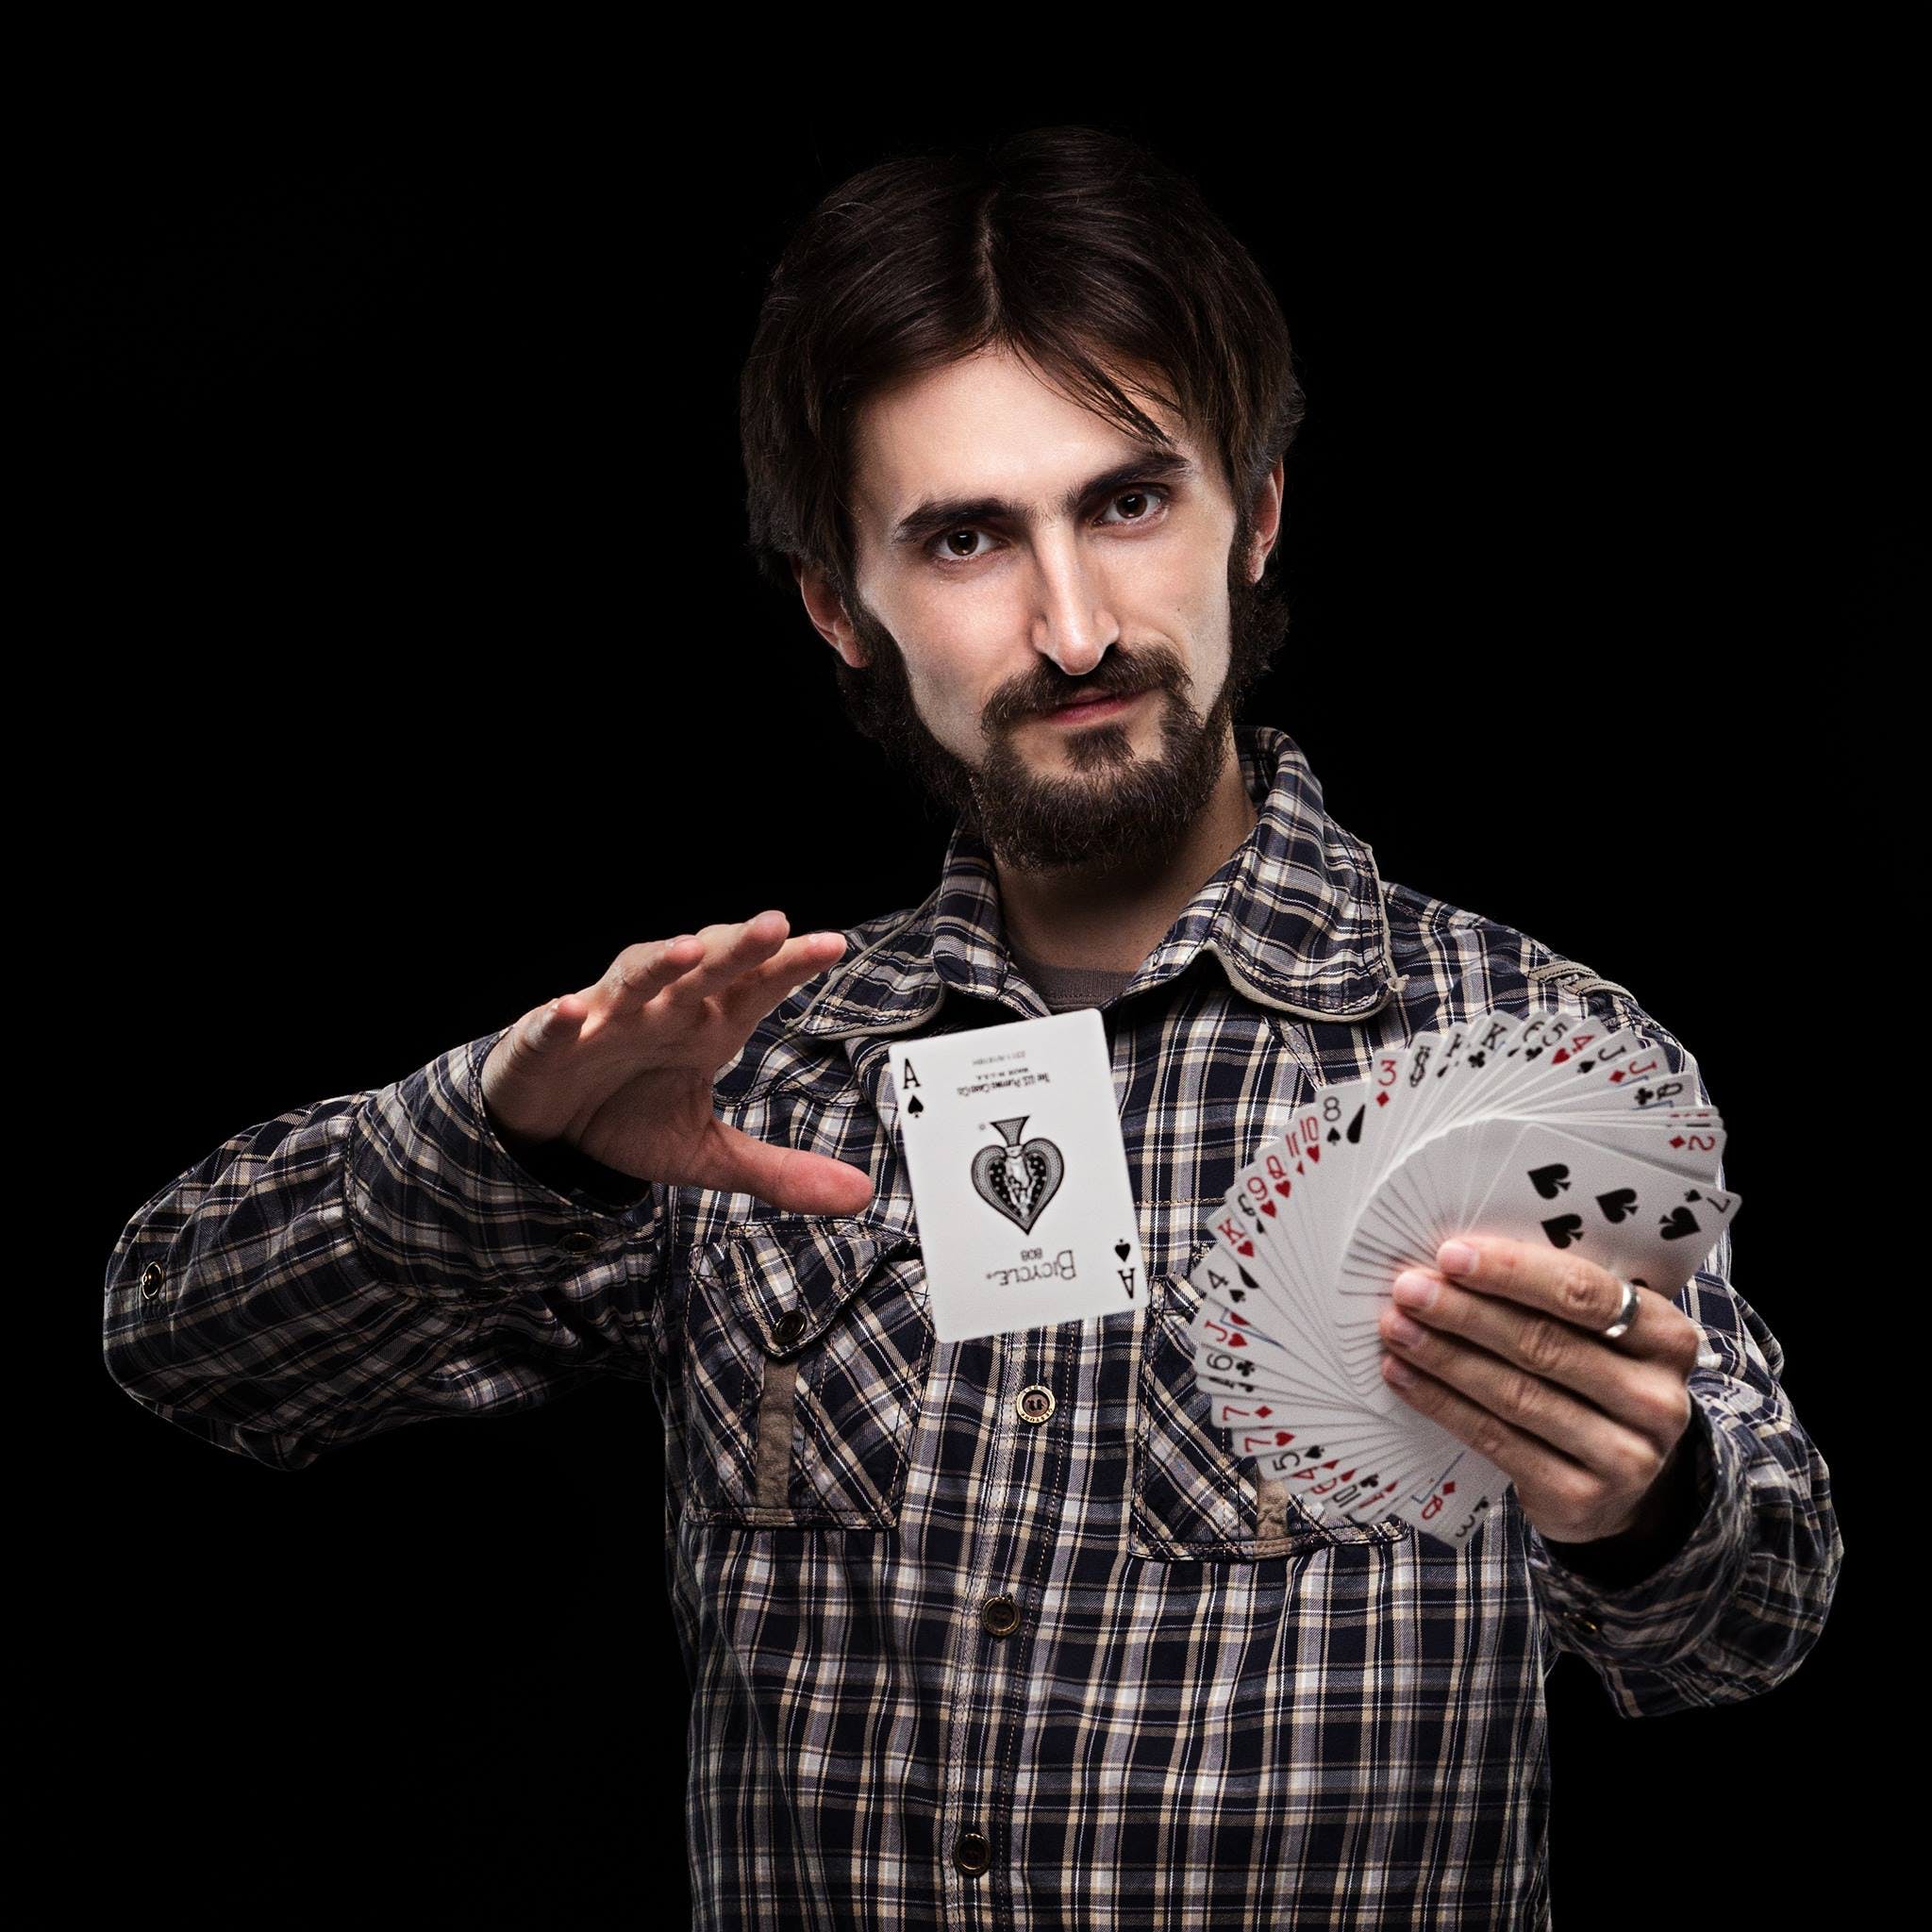 A magician doing a card trick. | Source: Pexels